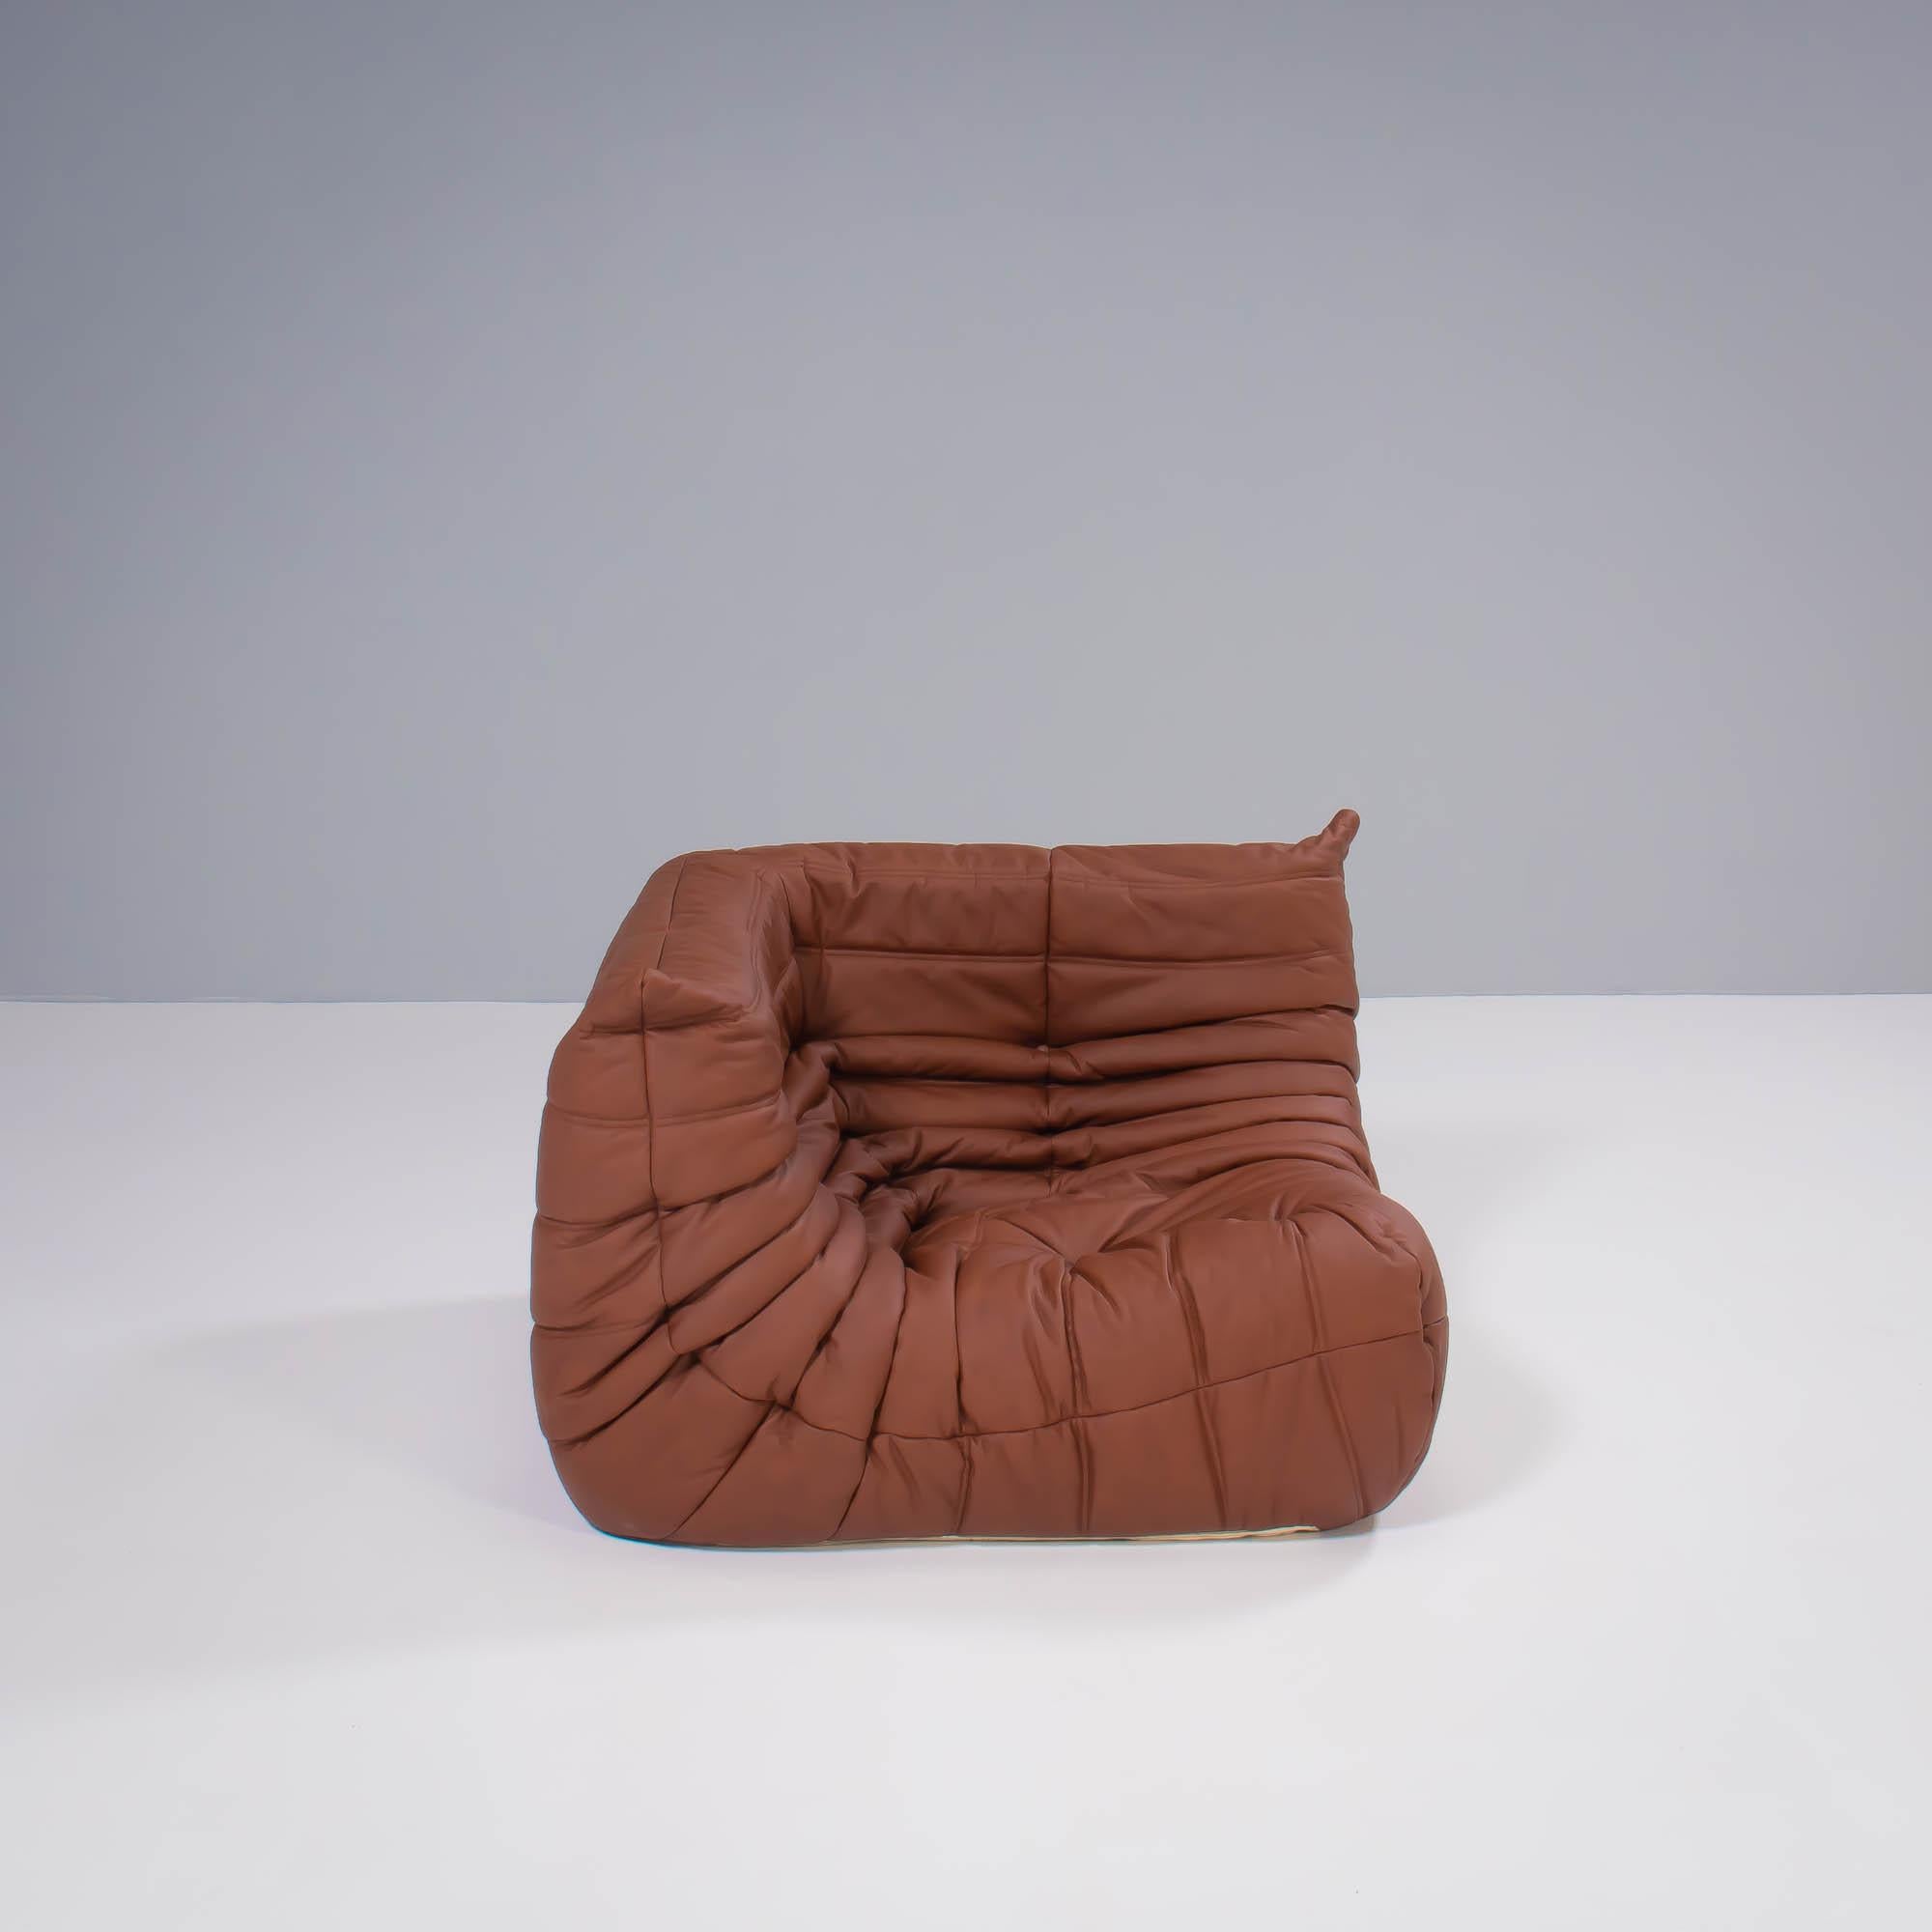 Das ikonische Sofa Togo, ursprünglich 1973 von Michel Ducaroy für Ligne Roset entworfen, ist ein Designklassiker geworden.

Dieses fünfteilige modulare Set ist unglaublich vielseitig und kann zu einem großen Ecksofa konfiguriert oder für eine